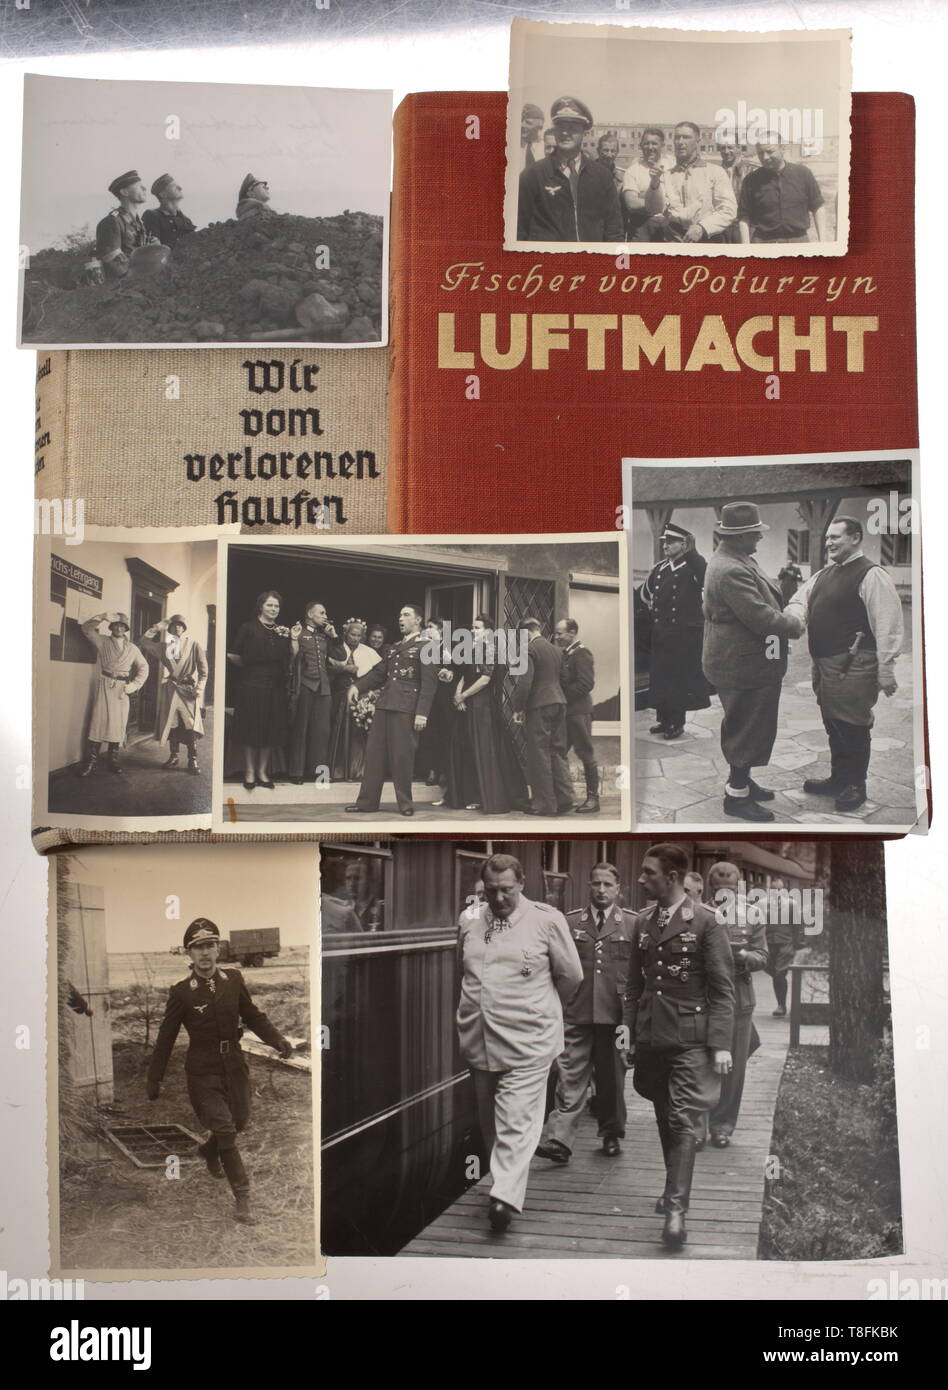 Oberst Werner Mölders - fotografías y libros 18 fotografías de diferentes formatos: Mölders con Göring delante de su tren especial, con su esposa, vistiendo un traje de piloto con camaradas, durante su formación vistiendo una bata y un casco de acero, sobre el terreno viendo un combate aéreo, con también tres fotografías de Carinhall. Ocho libros, 'Luftmacht', Fischer v. Poturzyn 1938, y "Wir vom verlorenen Haufen', F. V. Forell, flyleaves casi con el nombre de "inscripción W./Werner Mölders' en elaborar escrito, 'Mölders und seine Männer', F. V. Forell, estampado, sólo Editorial-Use signatu Foto de stock